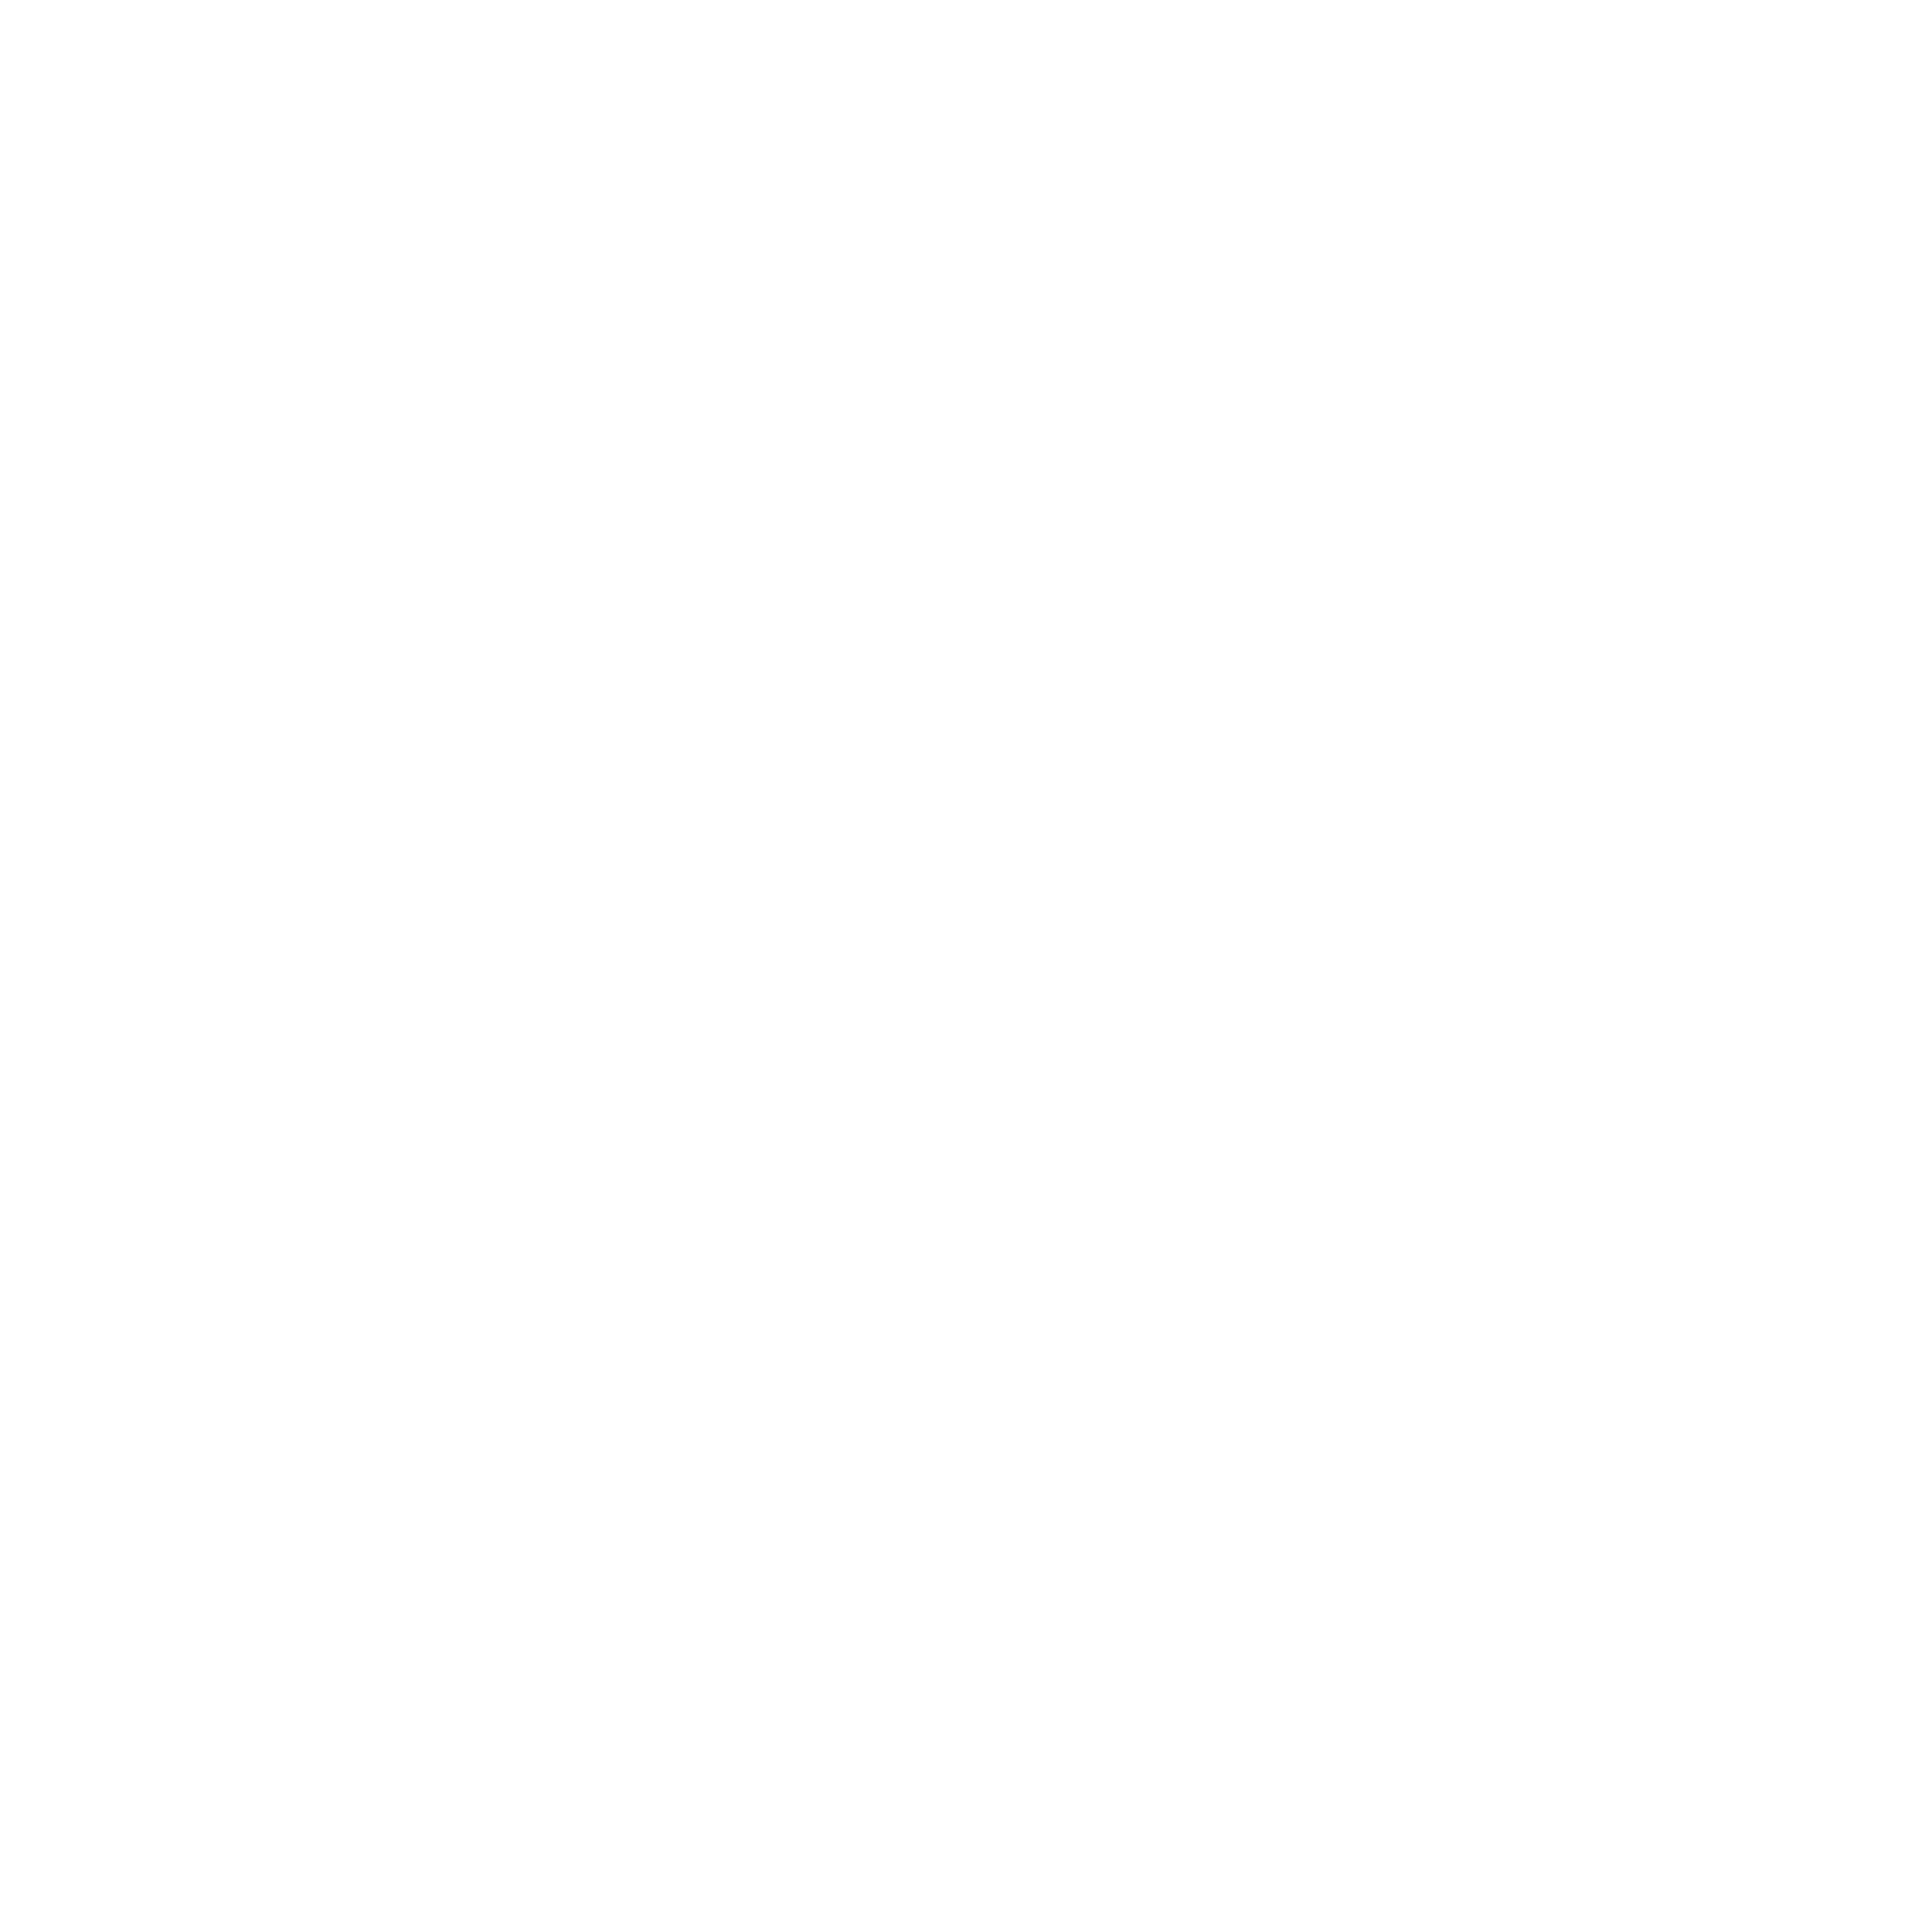 Mobar Coffee Co. 